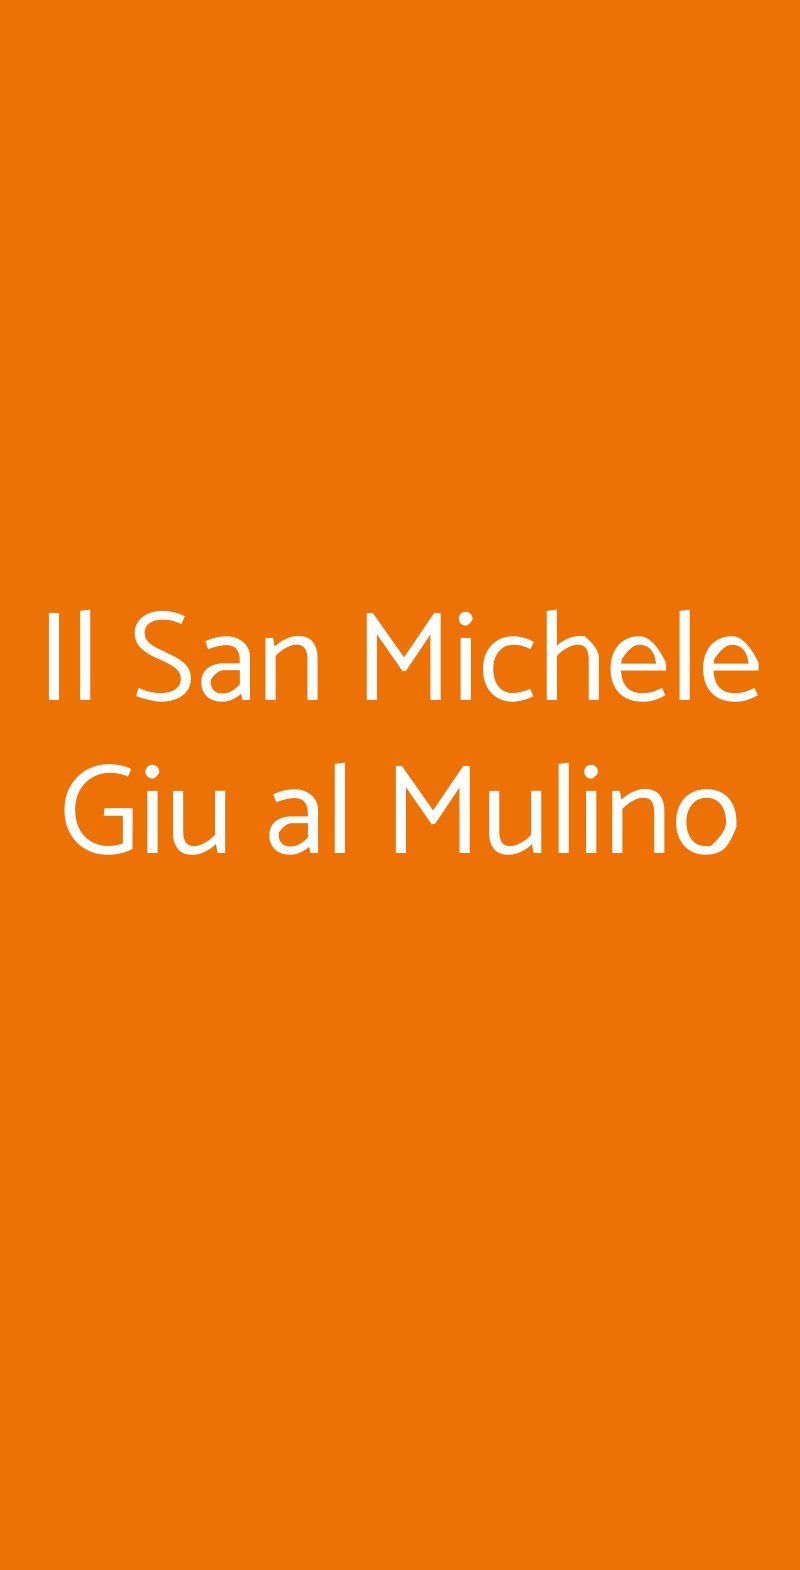 Il San Michele Giu al Mulino Pontecagnano Faiano menù 1 pagina